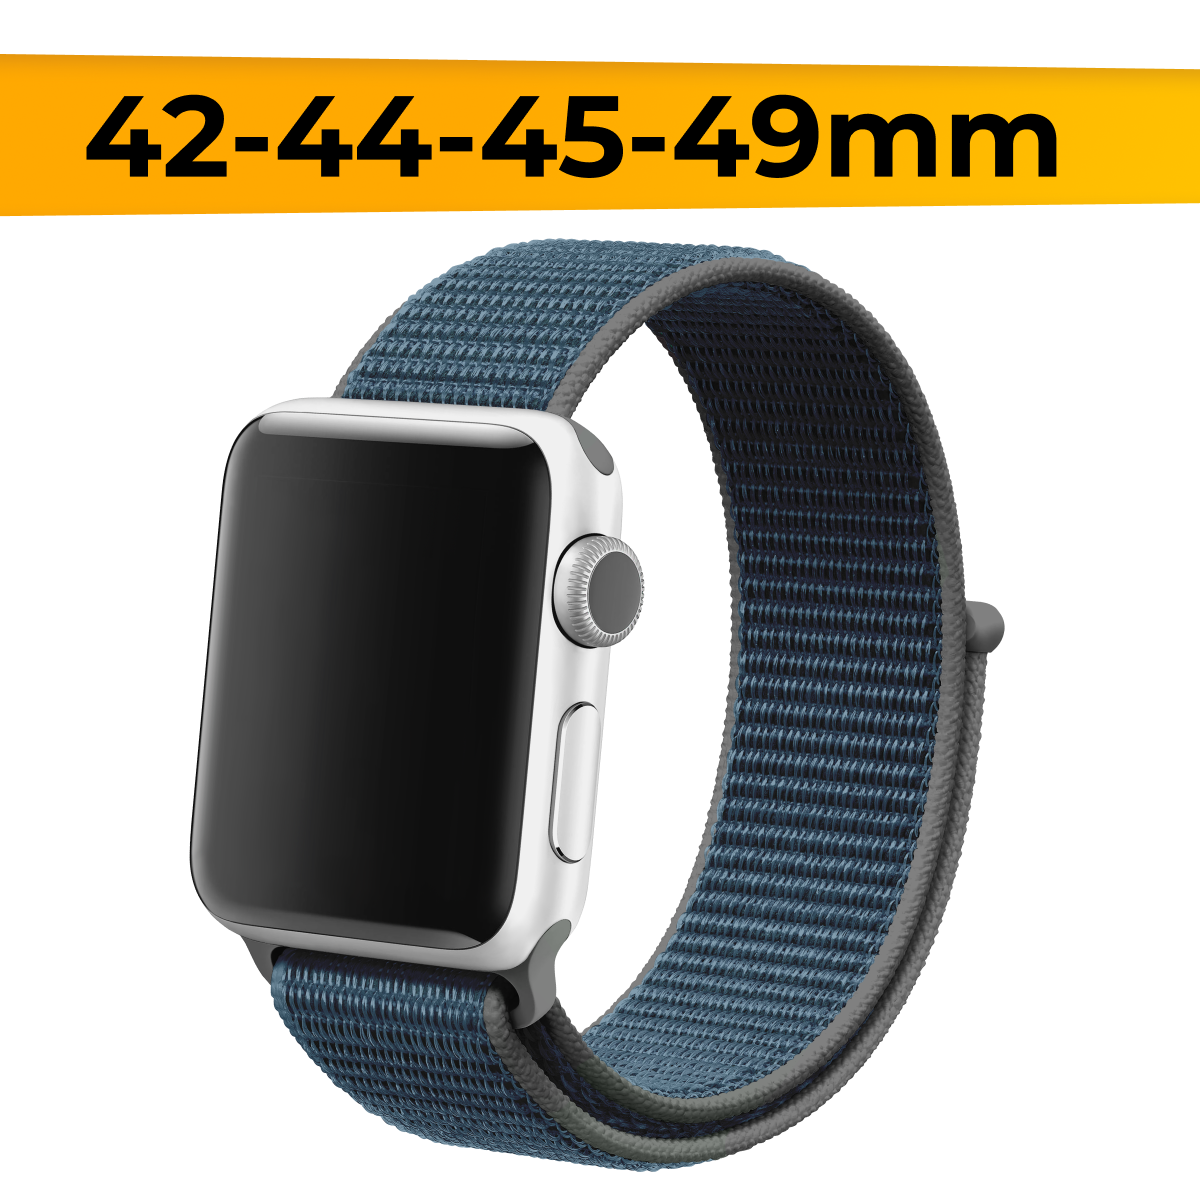 Нейлоновый ремешок для смарт часов Apple Watch 42-44-45-49mm / Эластичный браслет для Эпл Вотч 1-9 и SE / Сменный тканевый ремешок / Черно-синий